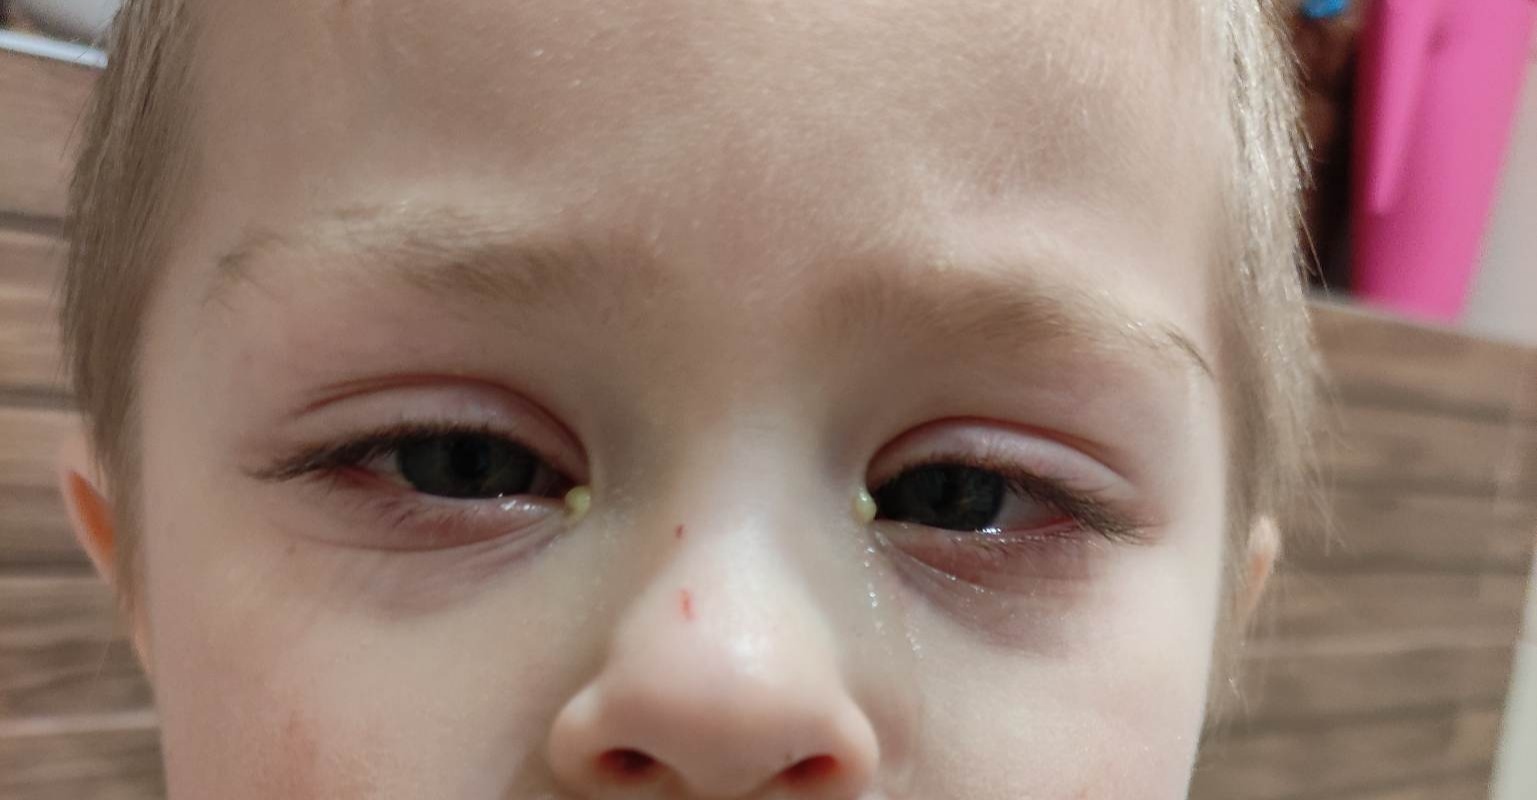 ak dieťa trpí zápalom očných spojoviek, tak sa u neho vyskytne slzenie a výtok, ktorý je hnisavý a väčšinou zelenej farby.